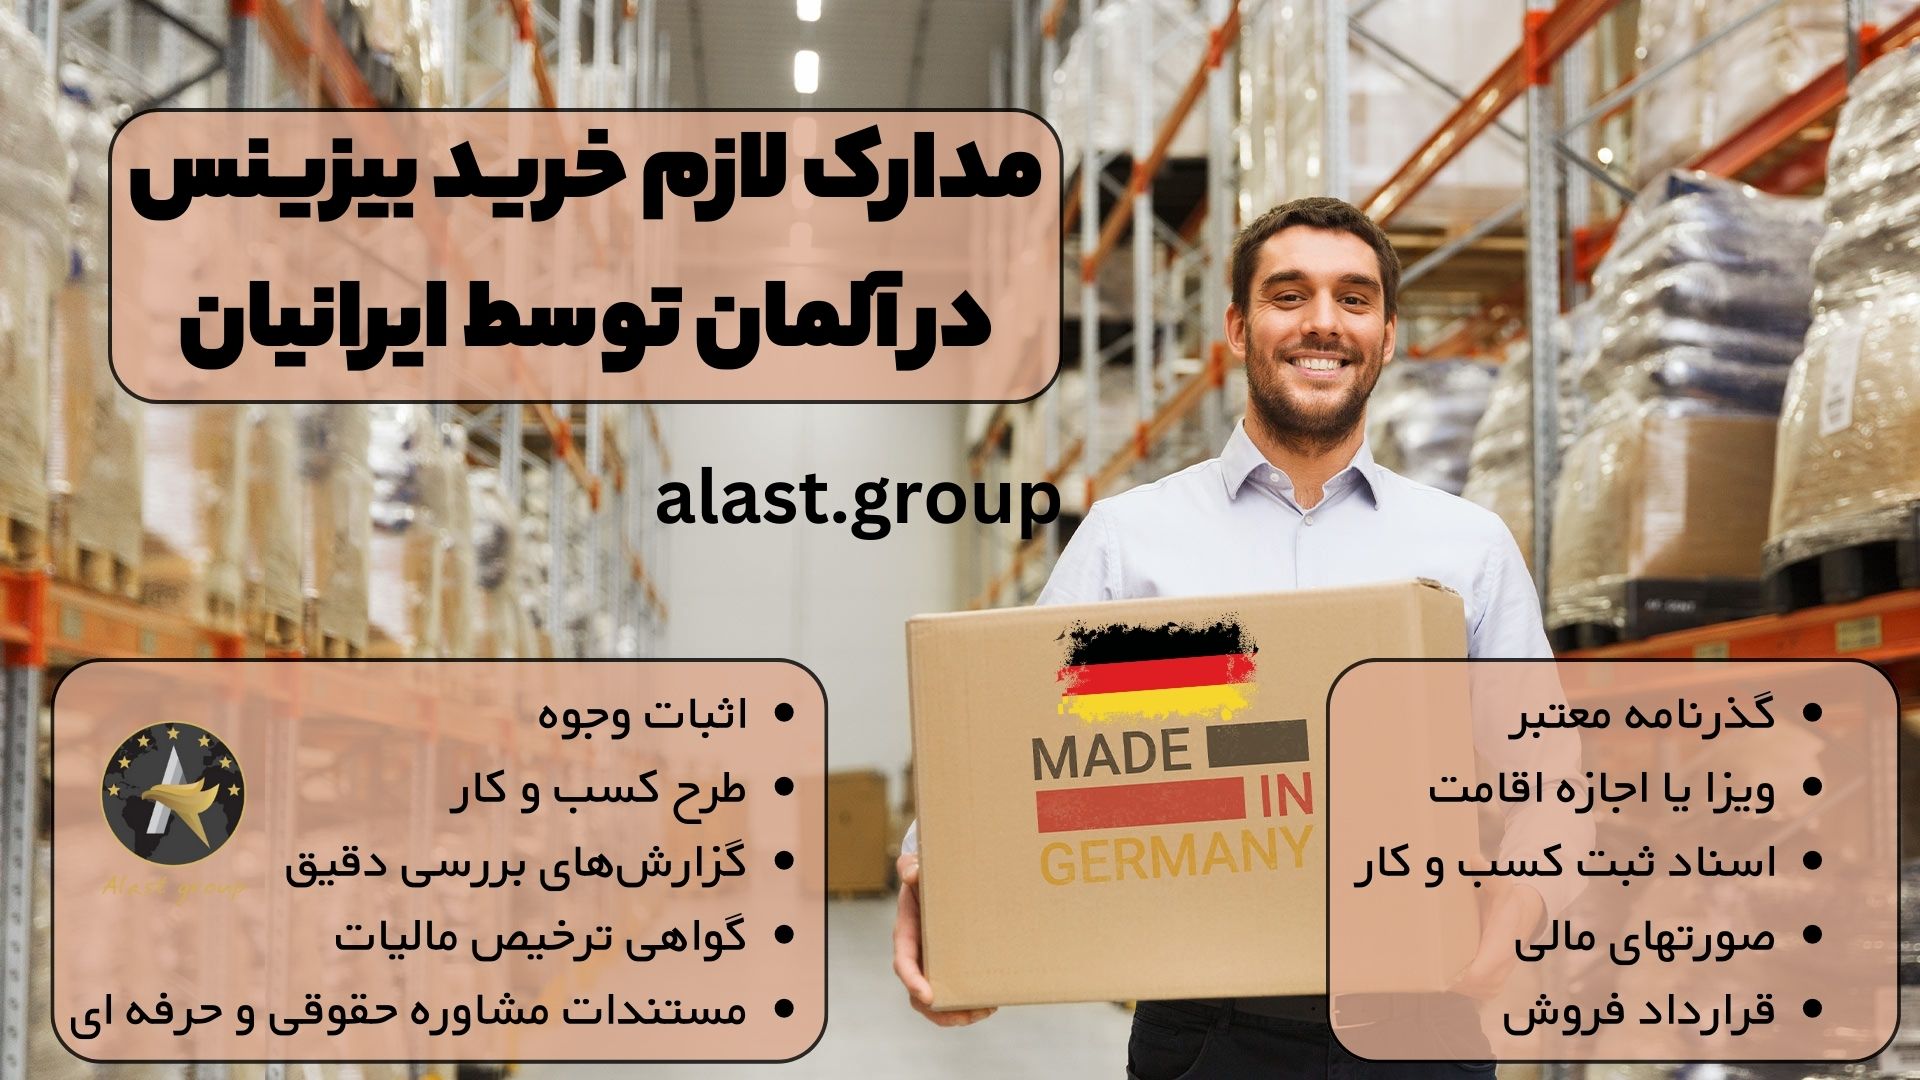 مدارک لازم خرید بیزینس در آلمان توسط ایرانیان